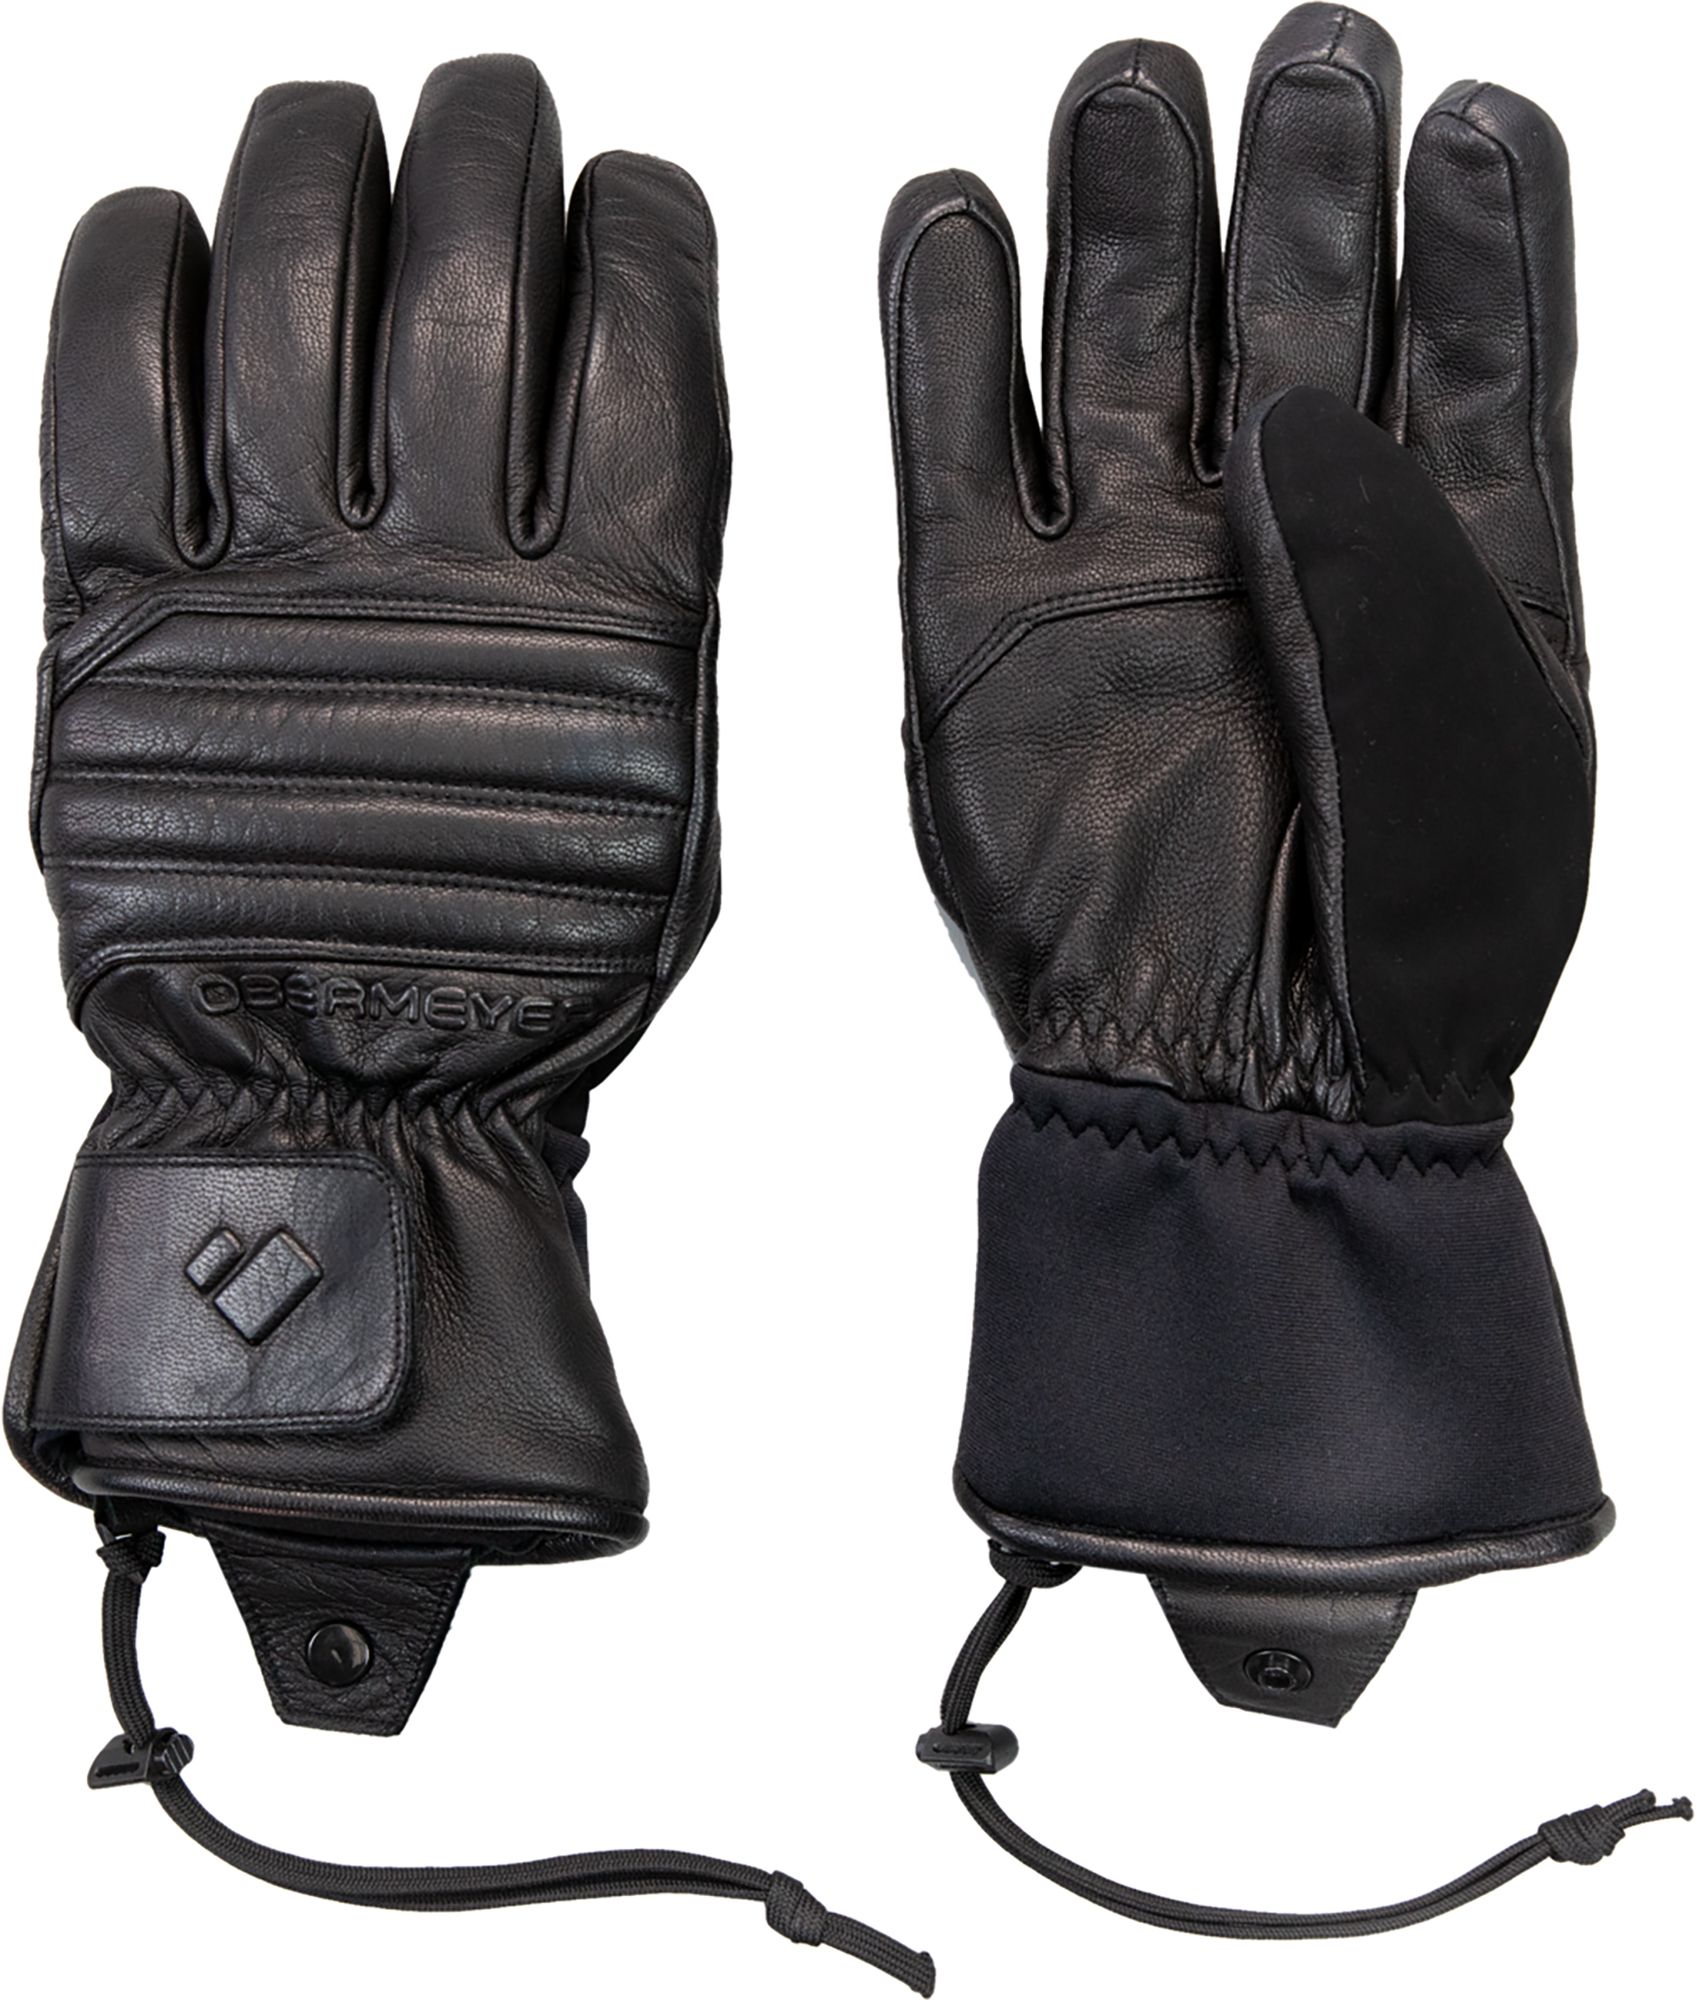 Obermeyer Men's Leather Gloves